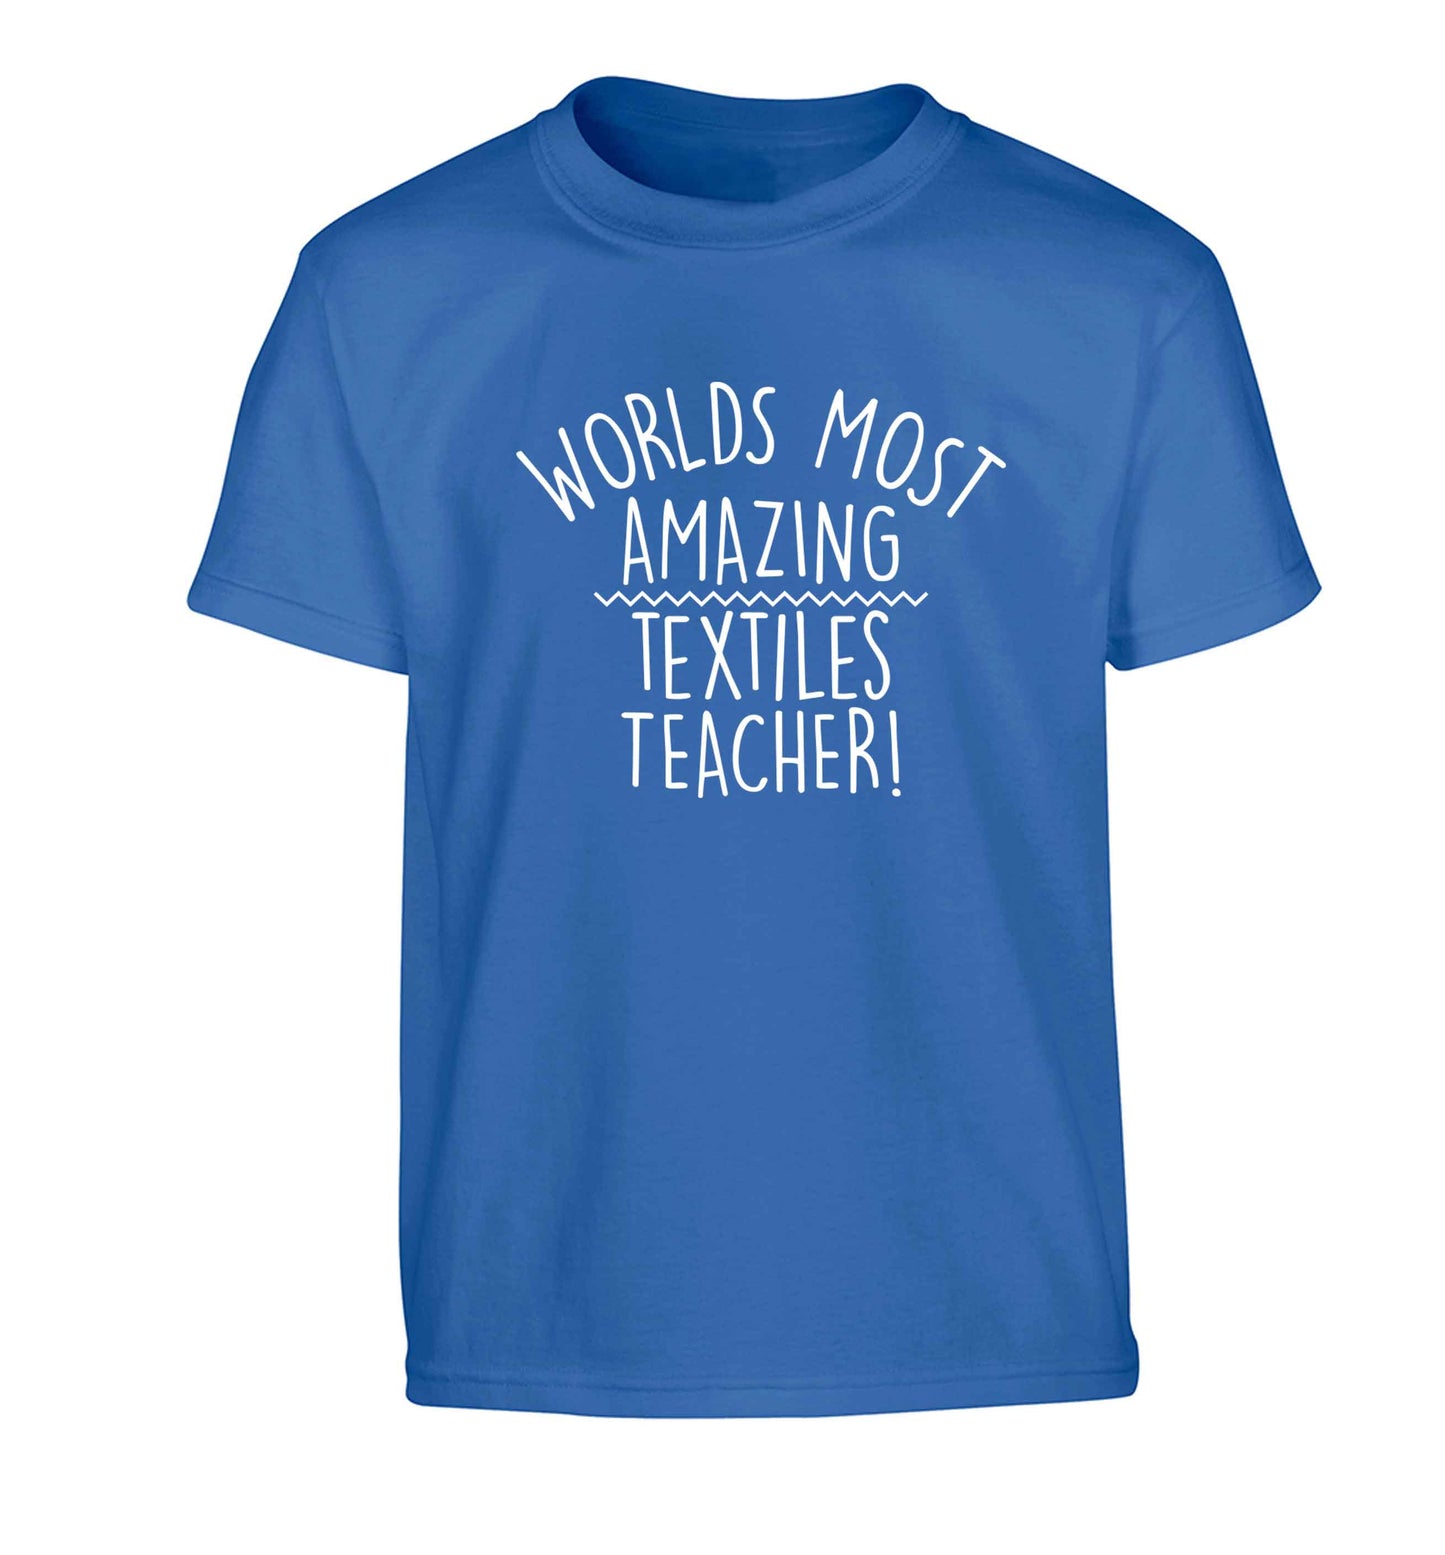 Worlds most amazing textiles teacher Children's blue Tshirt 12-13 Years